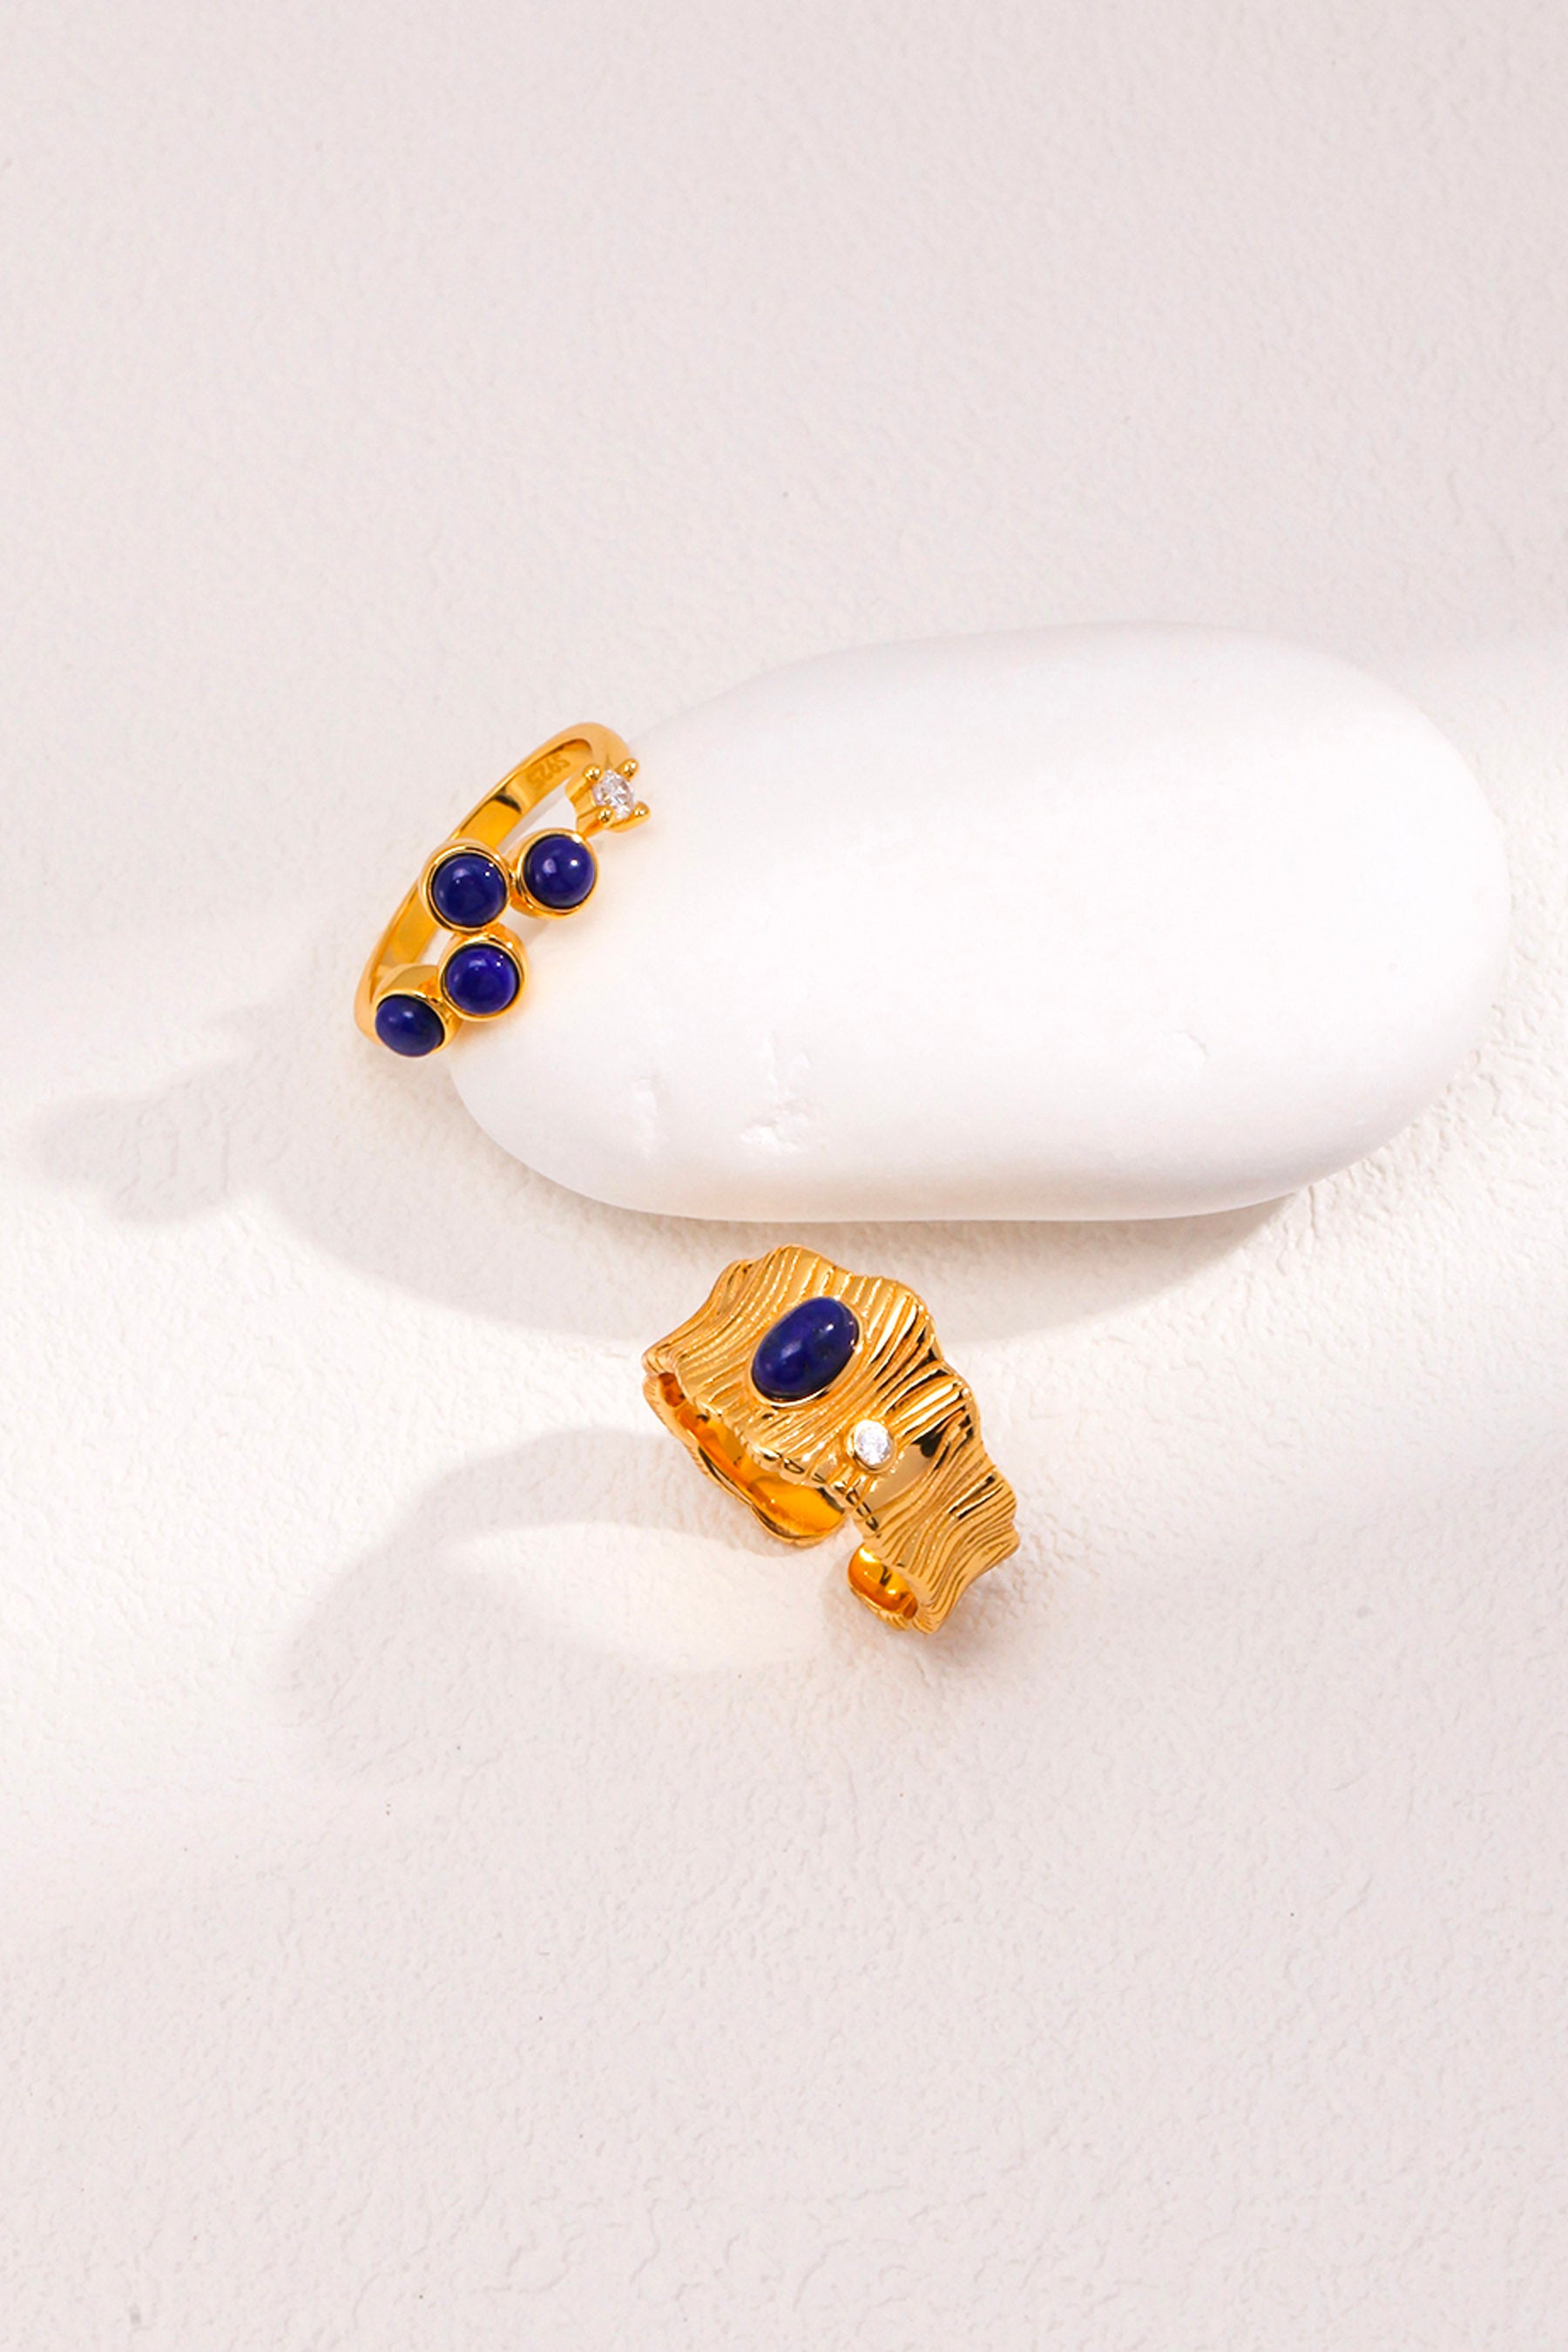 inlaid gold aquamarine ring